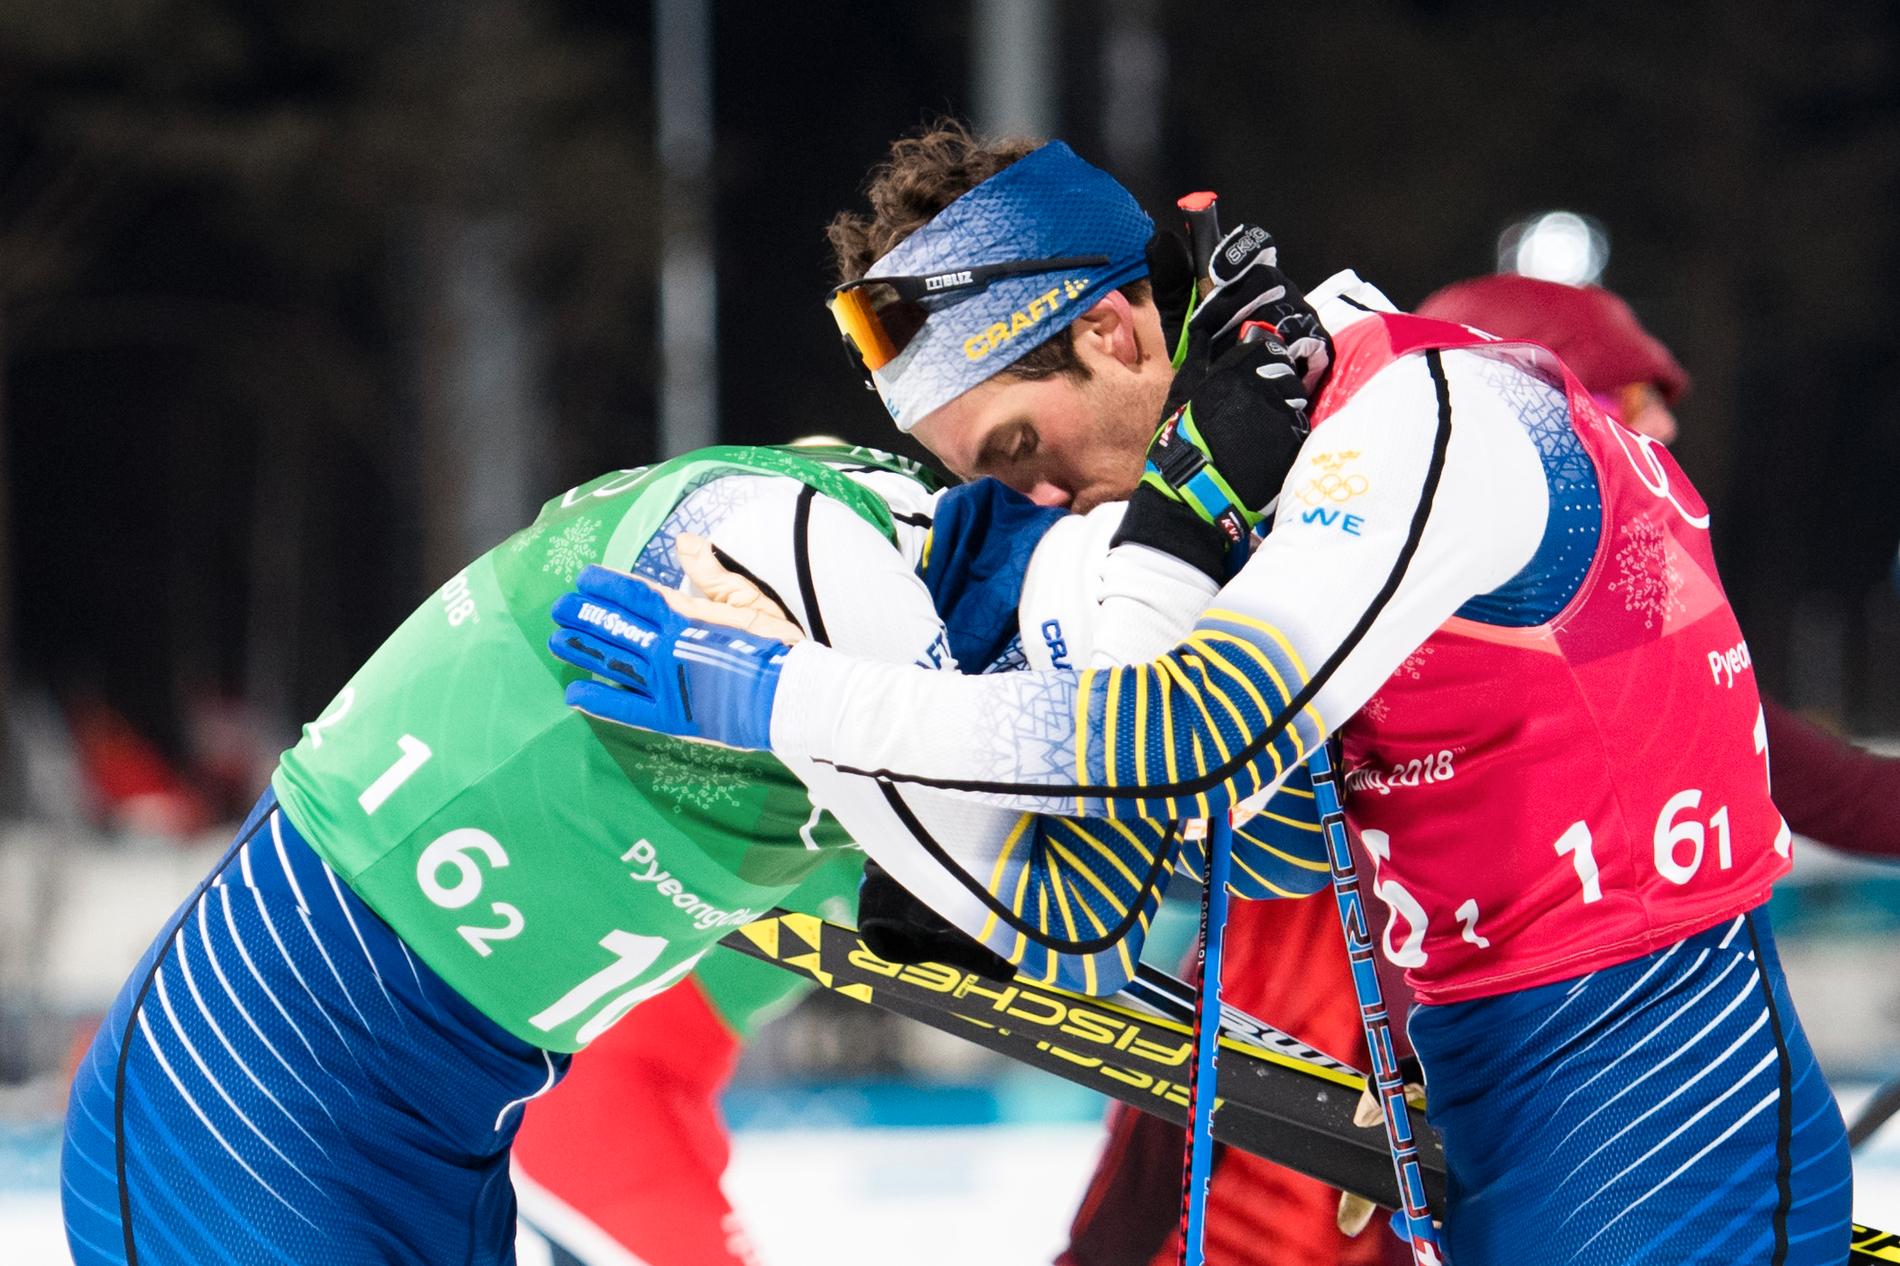 Calle Halfvarsson och Marcus Hellner slagna i OS-sprint-finalen.